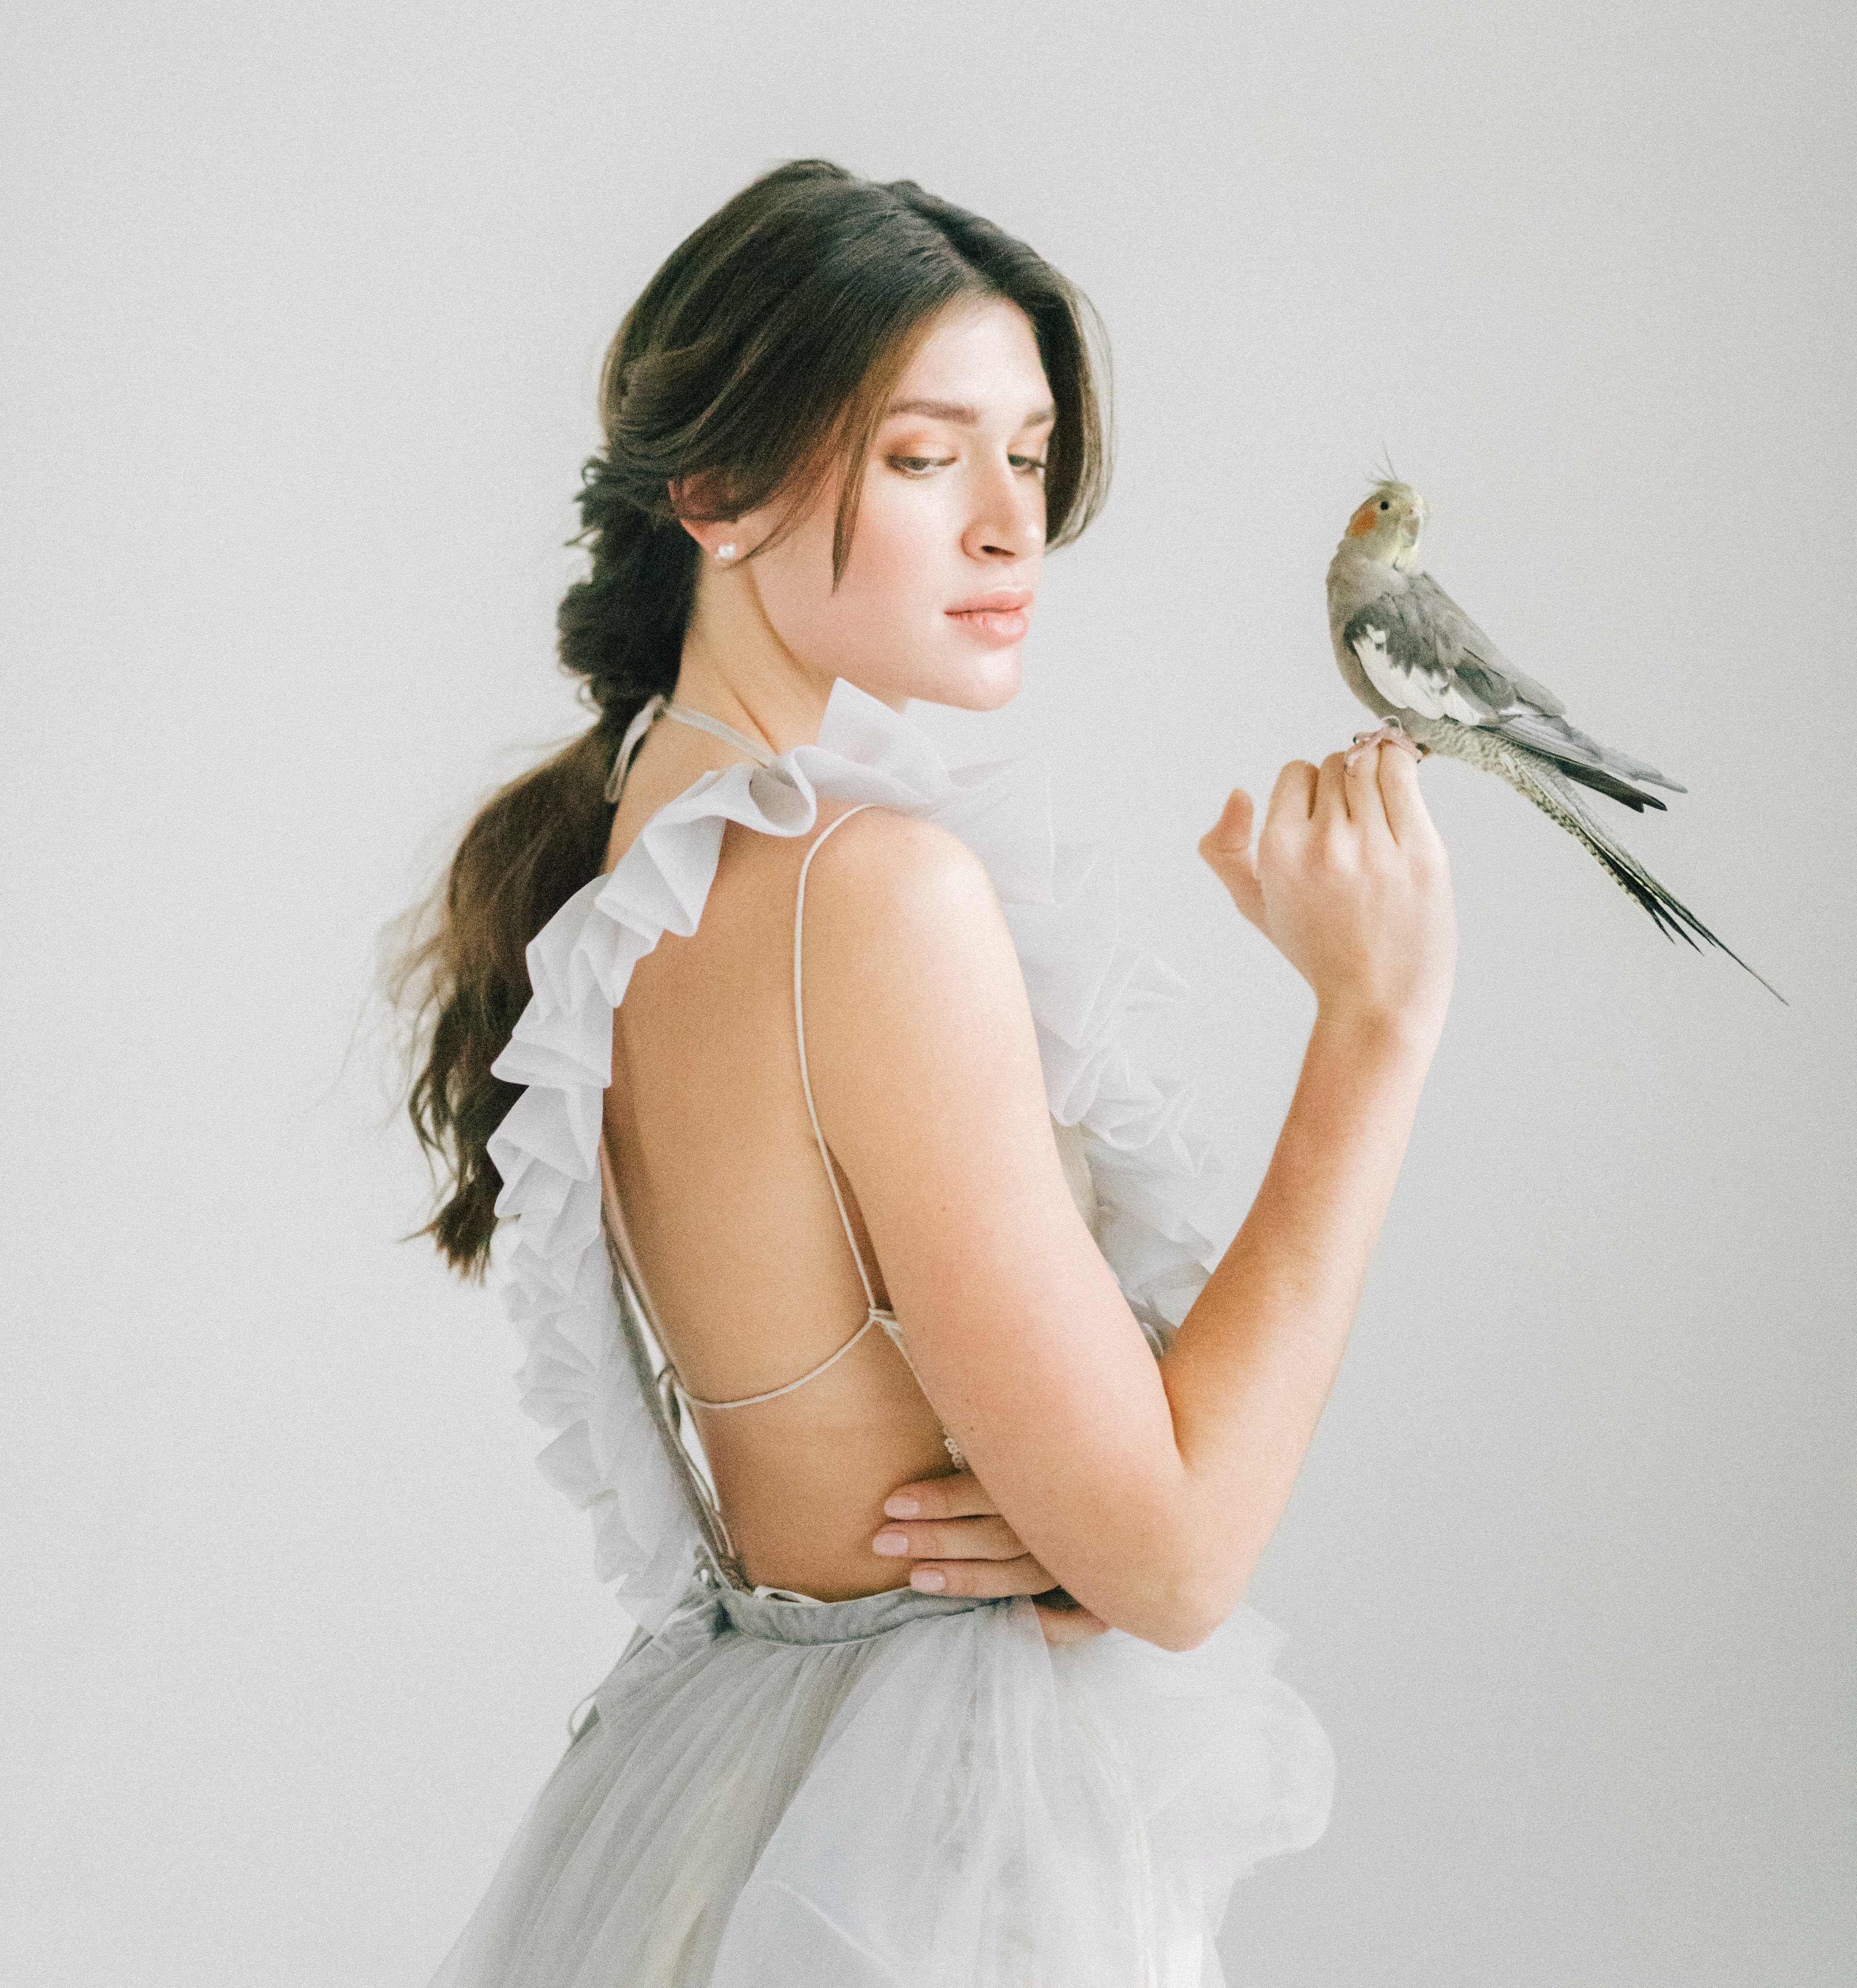 Šperky s ptáčky – krásné a něžné. Ptačí šperky jsou hit.